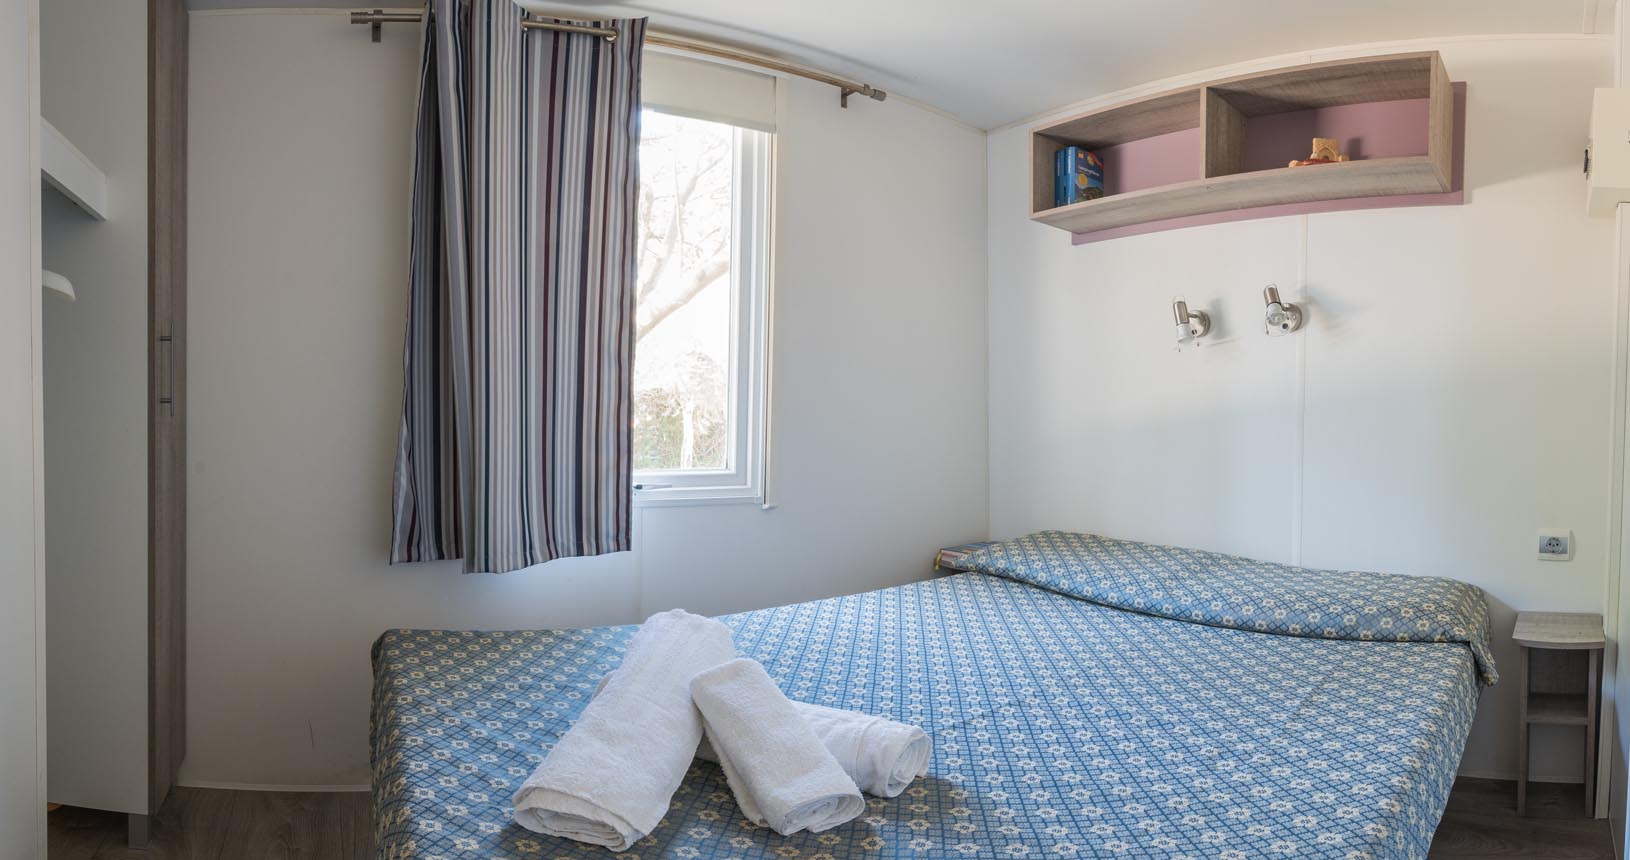 camera da letto matrimoniale casa vacanze deluxe - bed and breakfast sul mare sicilia